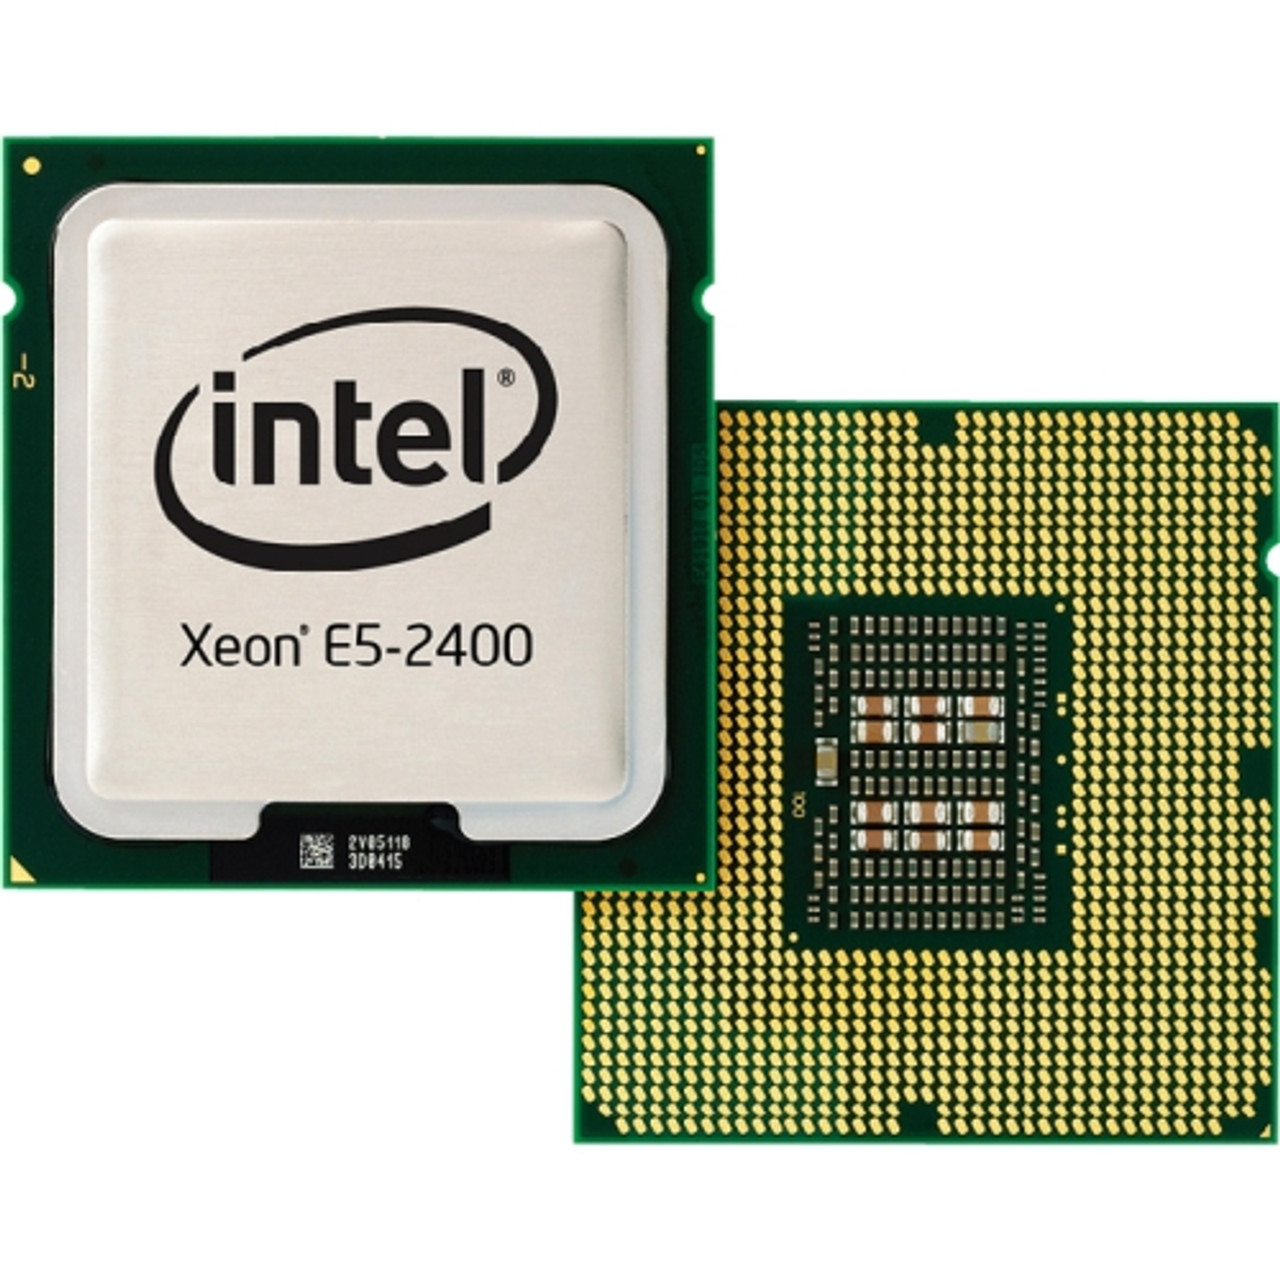 Подобрать процессор intel. Процессор Intel Xeon e5-2609v2. Процессор Intel Xeon e5-2637v2. Intel Xeon e5-2420v2 Ivy Bridge-en lga1356, 6 x 2200 МГЦ. Intel Xeon e5 2667.